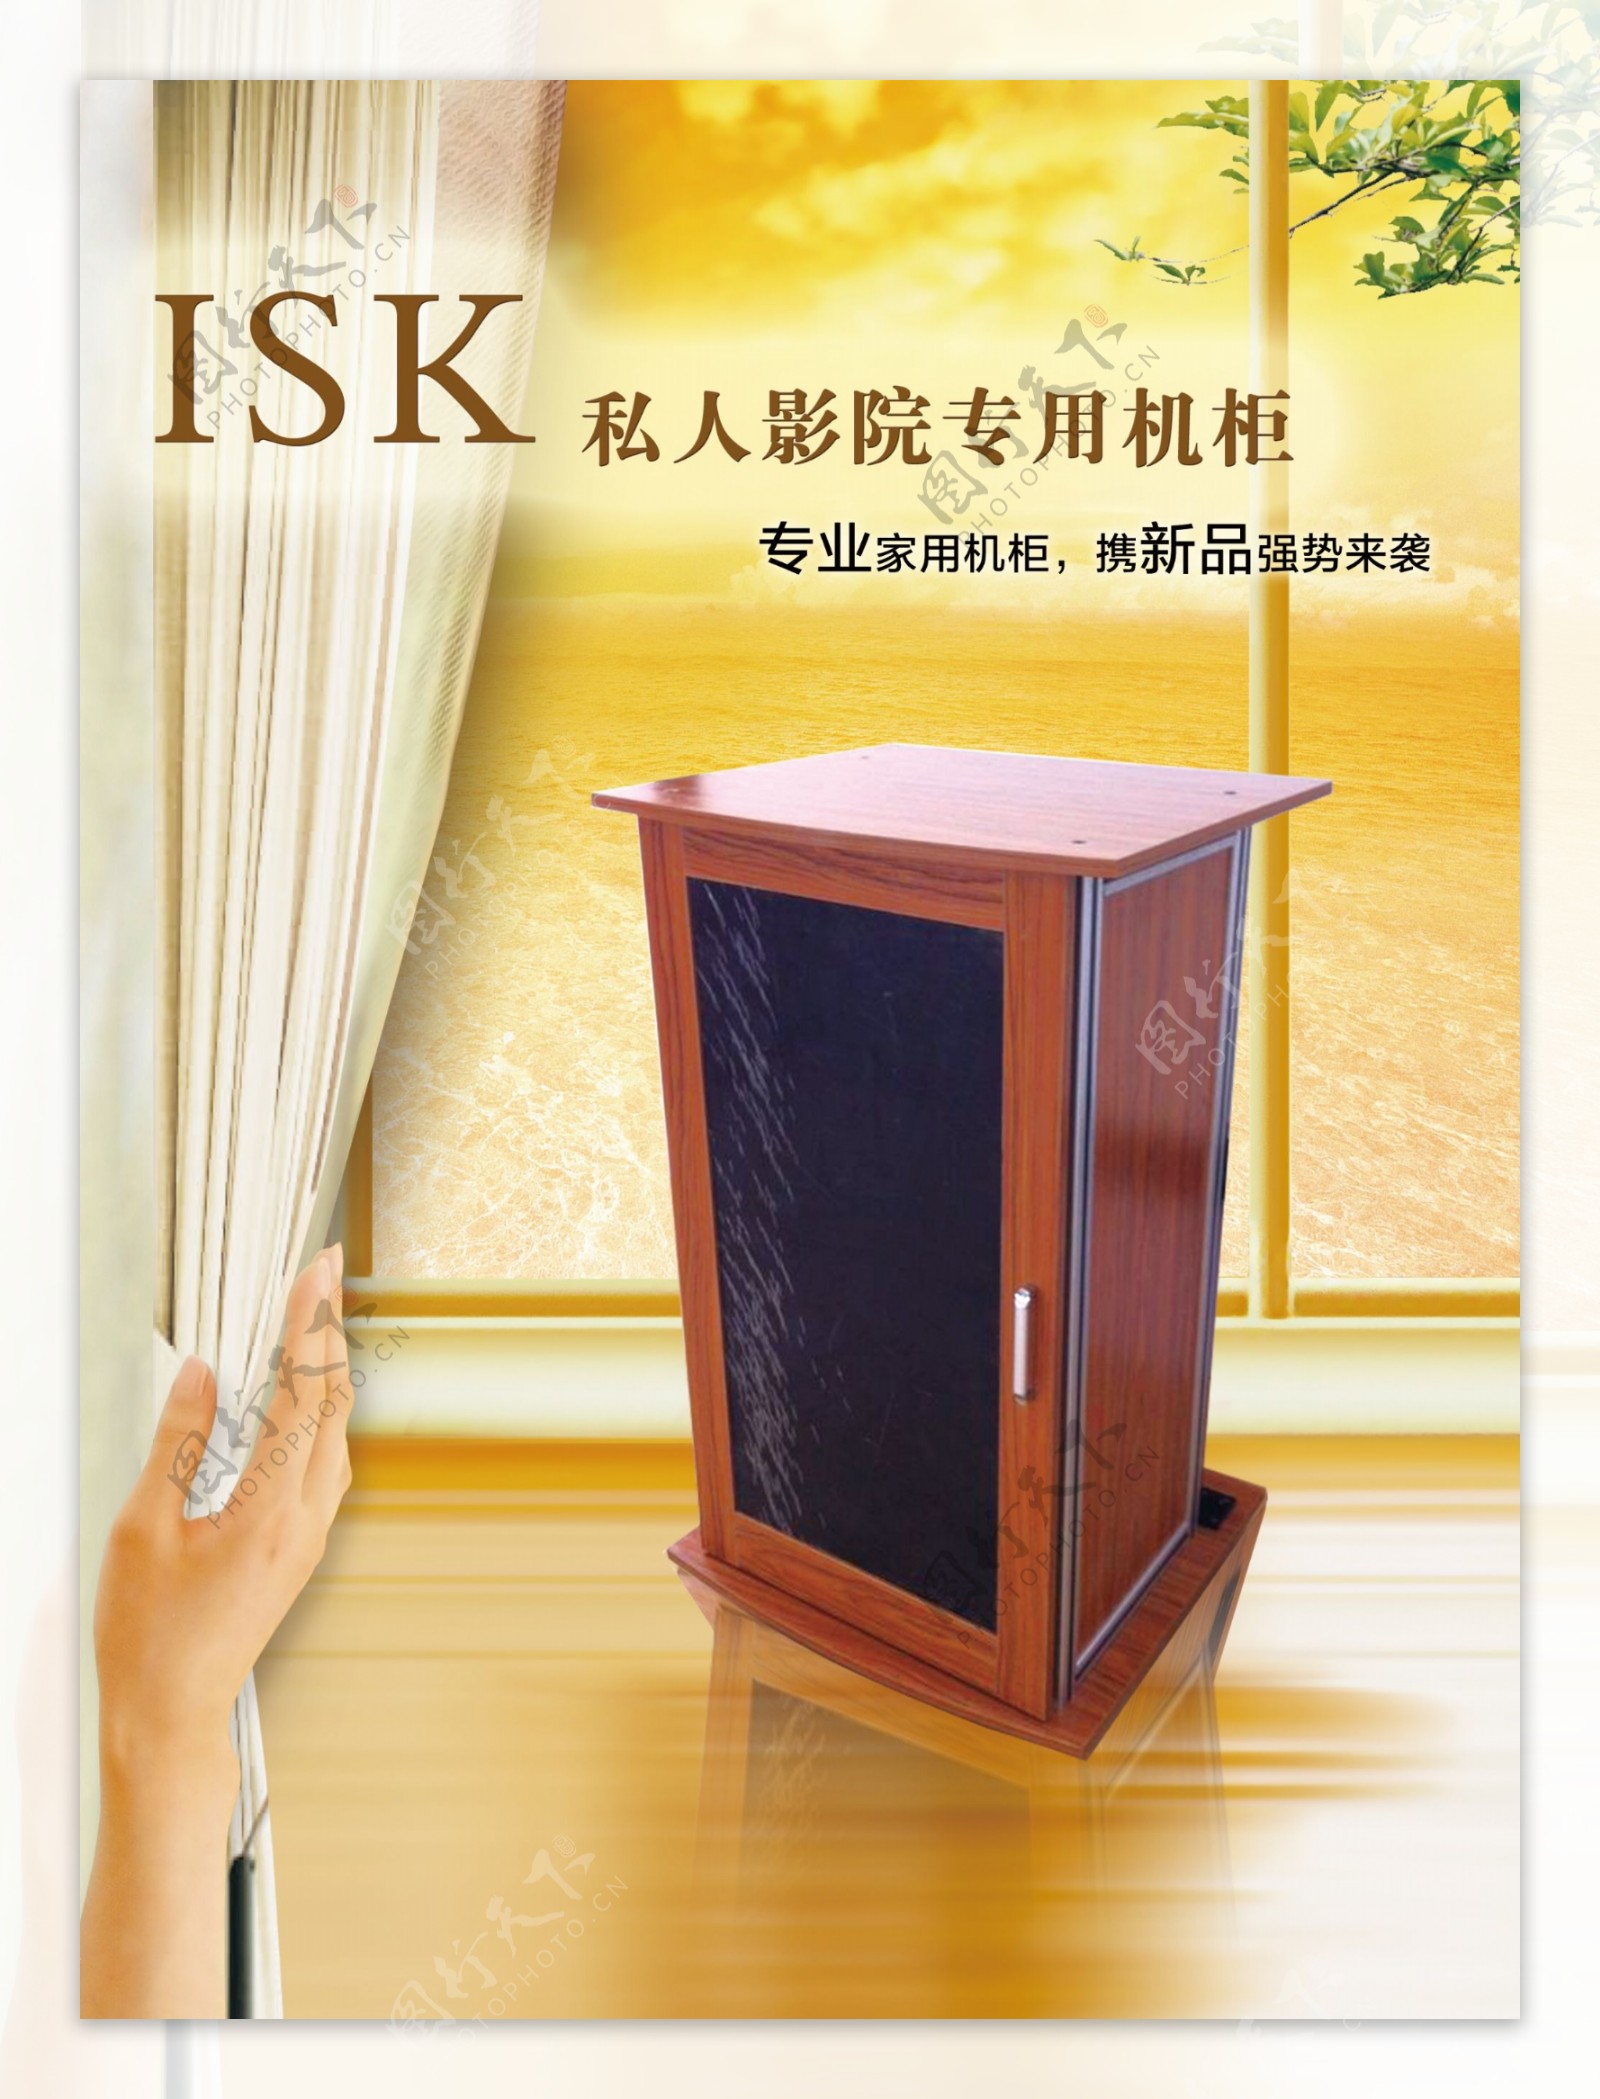 ISK私人影院专用机柜